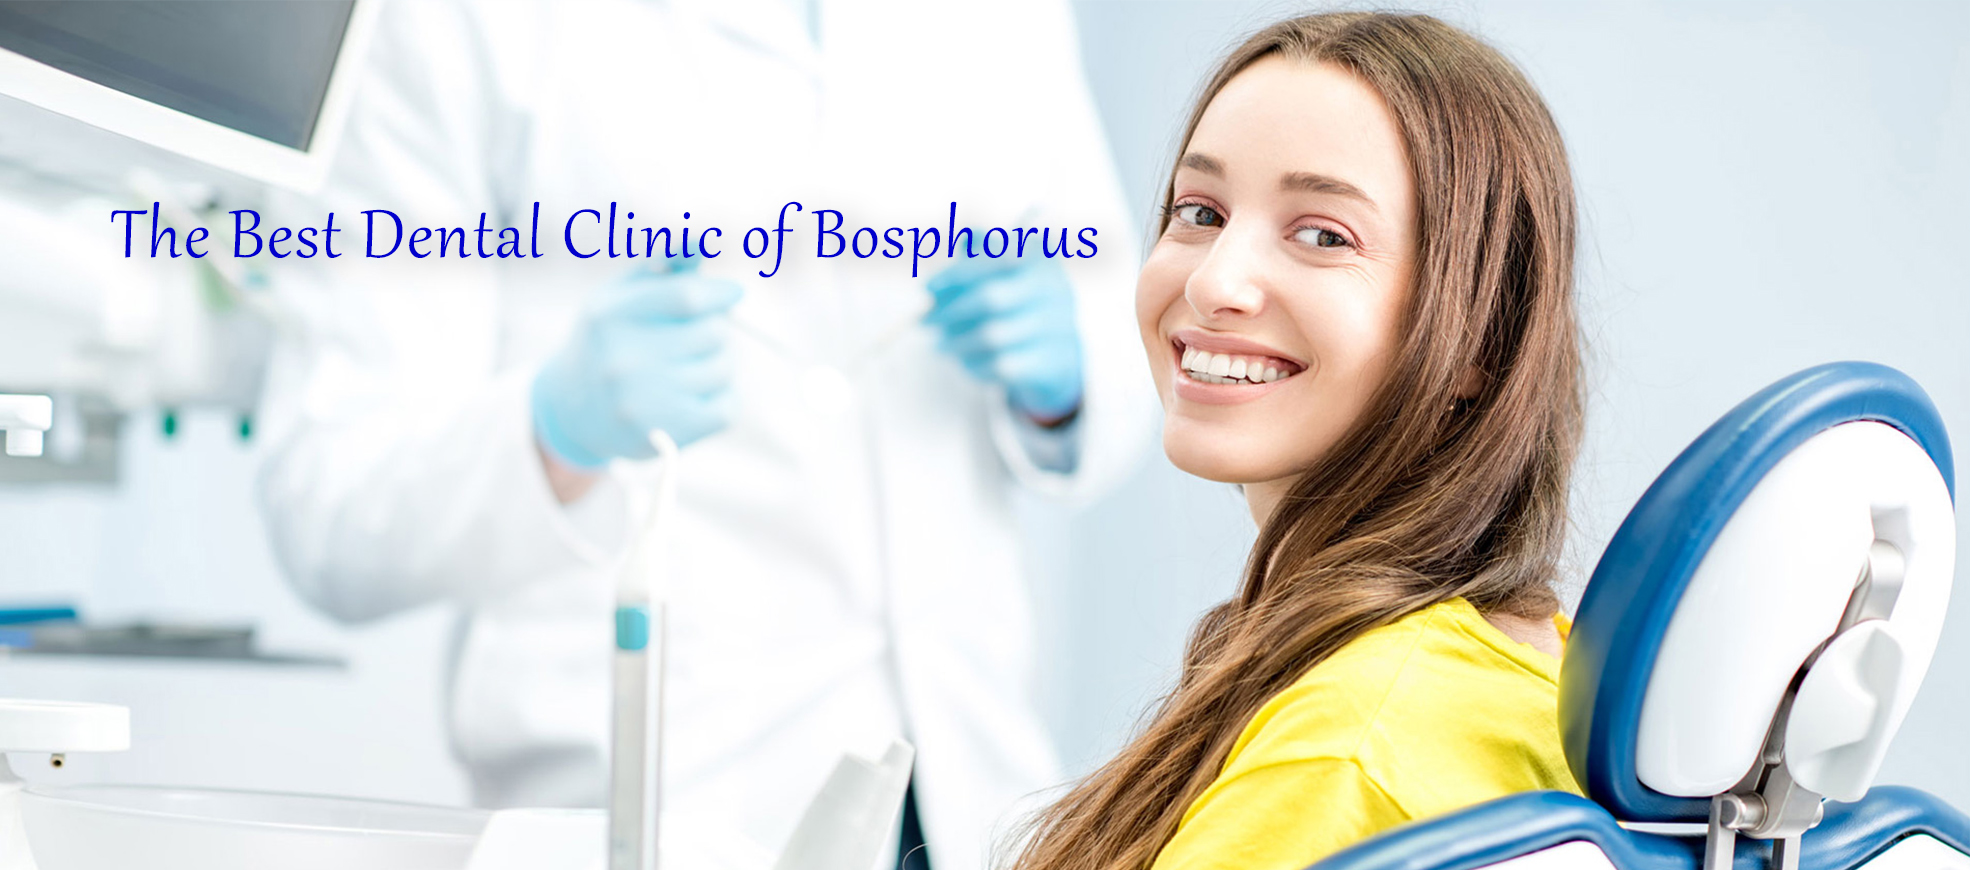 Meilleure clinique dentaire du Bosphore